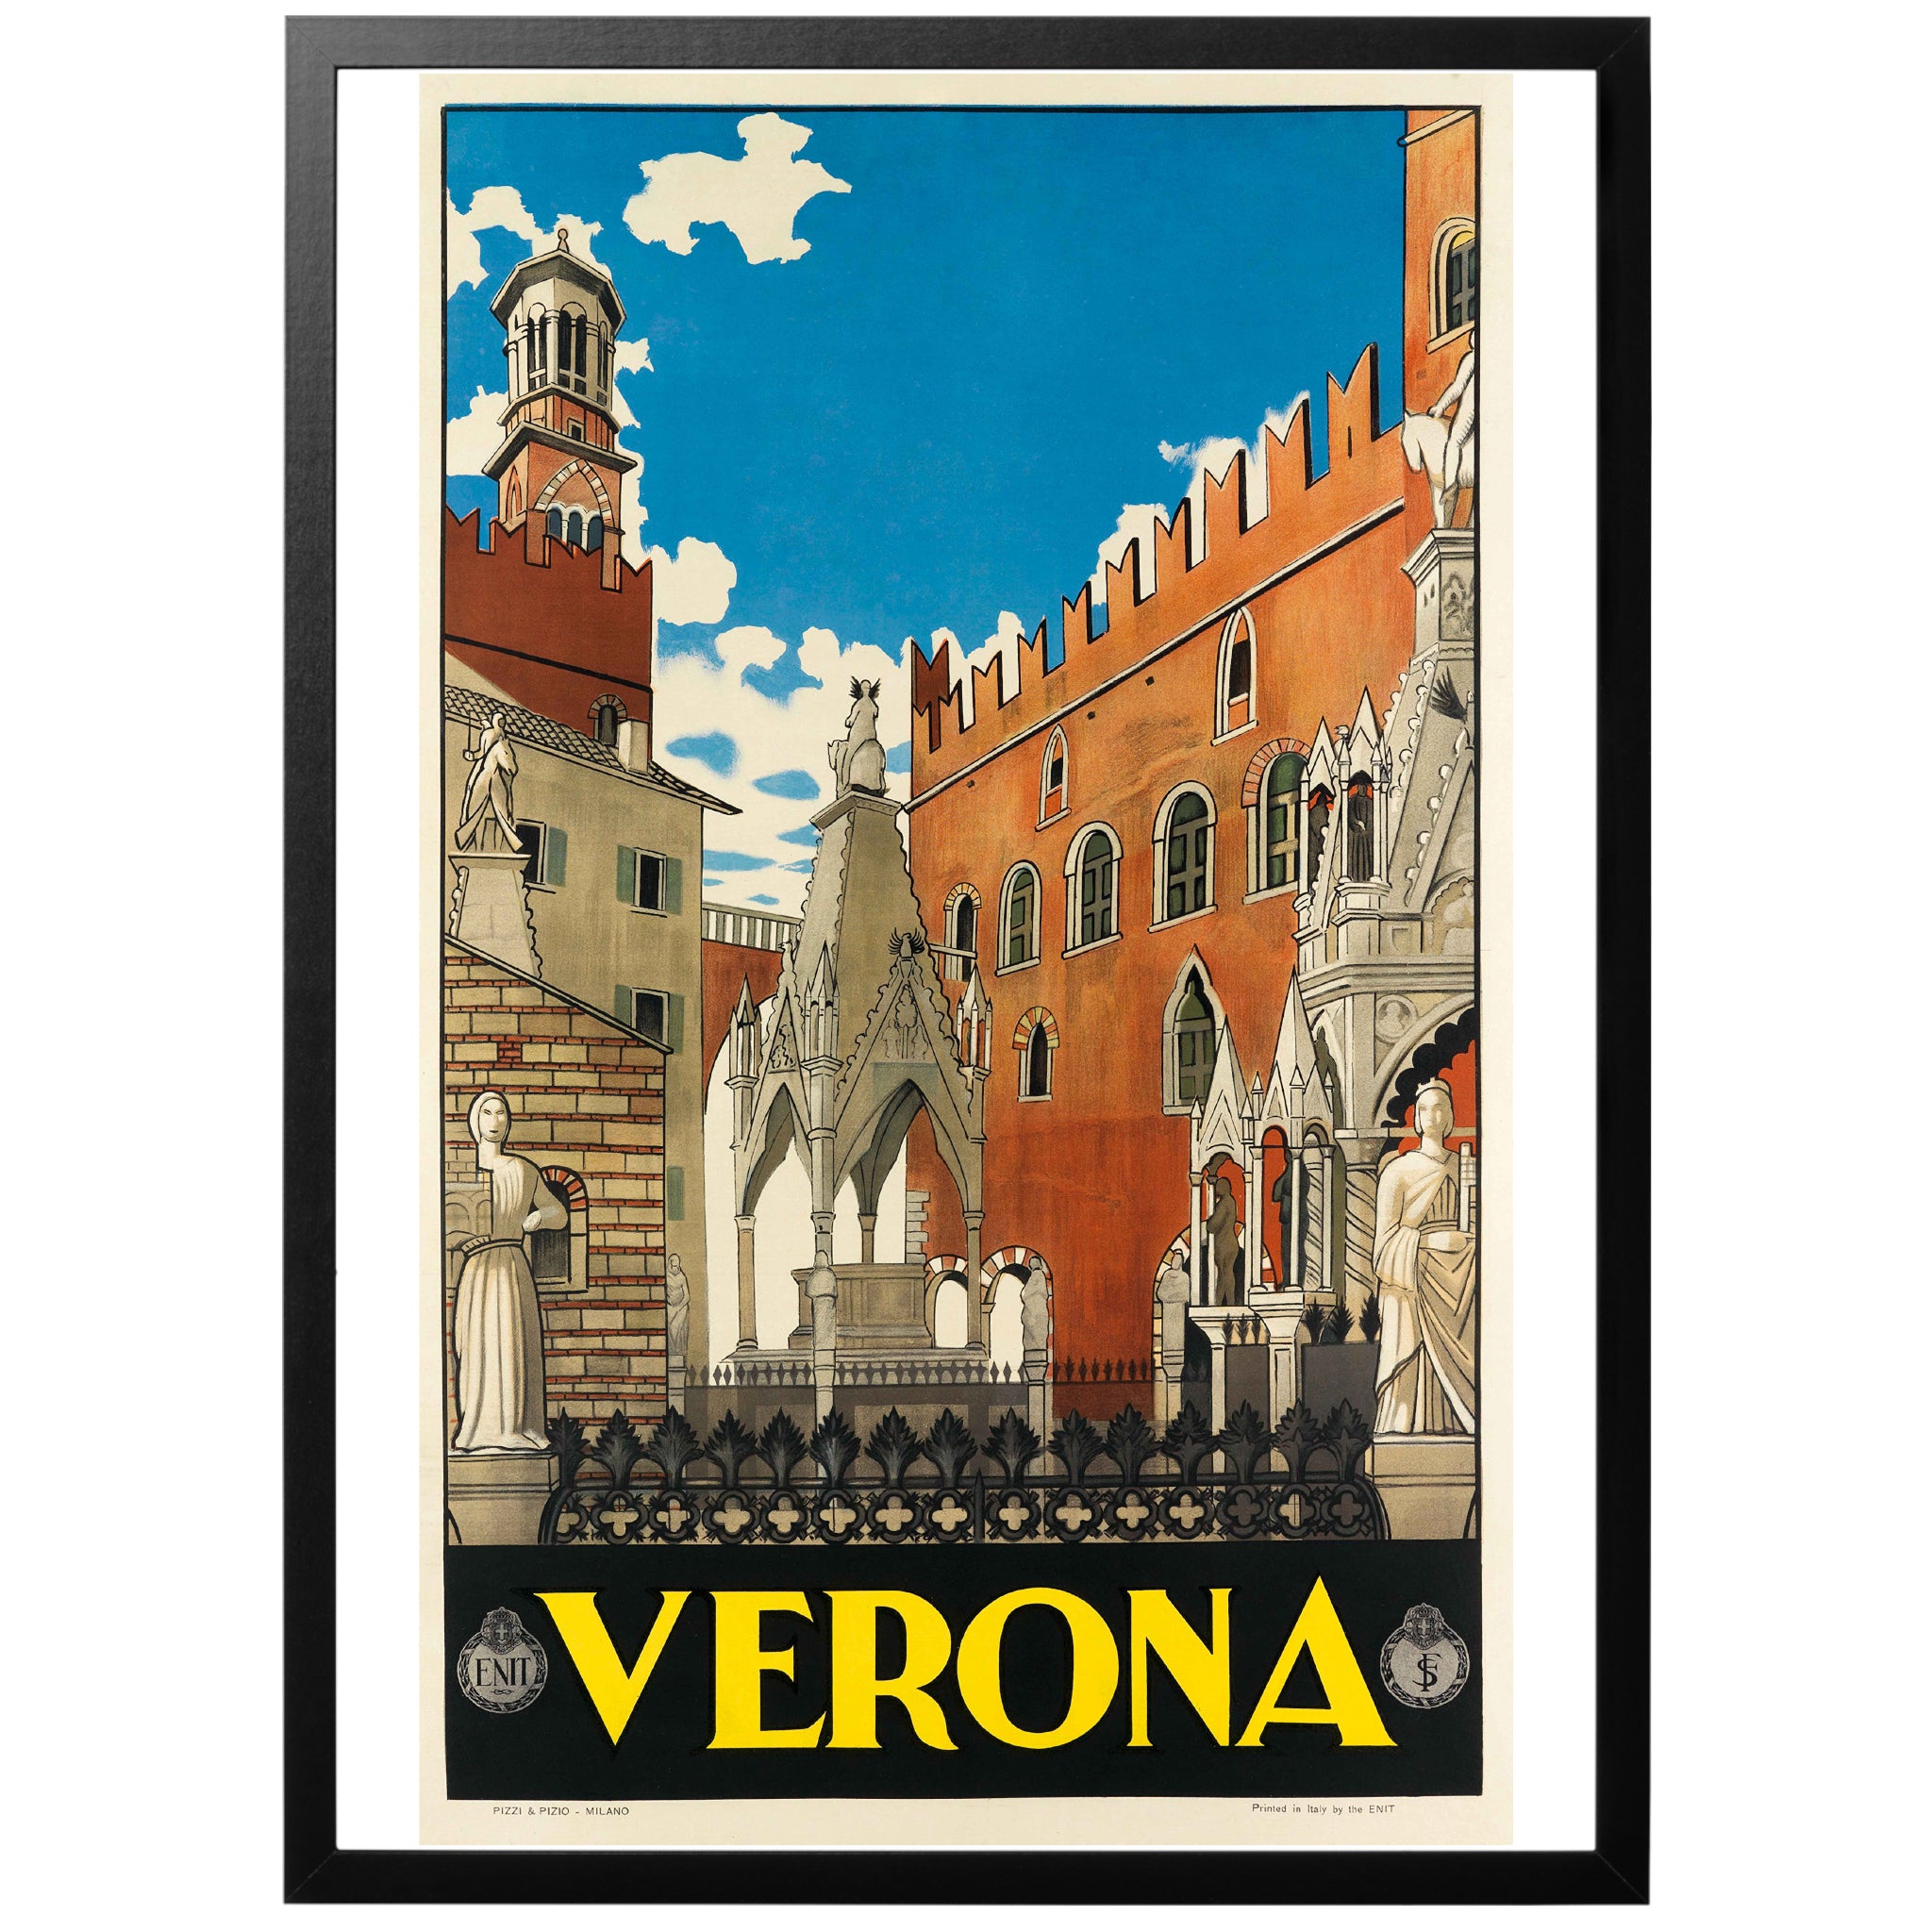 Verona Italy Poster